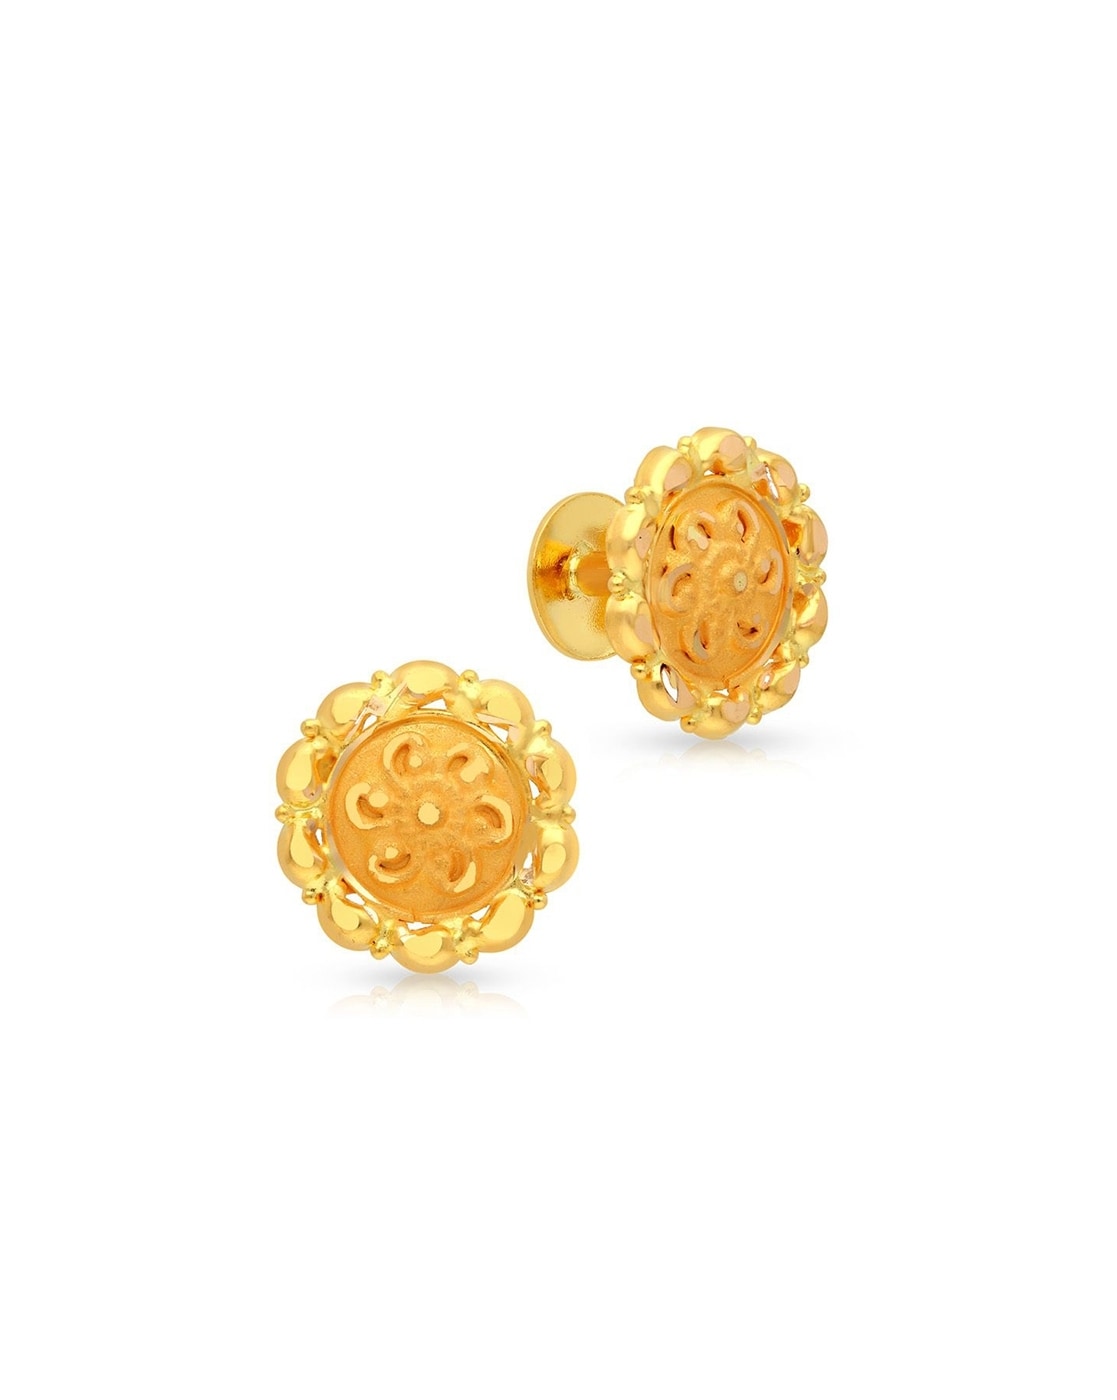 Shop Floral Swirls Diamond Stud Earrings Online | CaratLane US